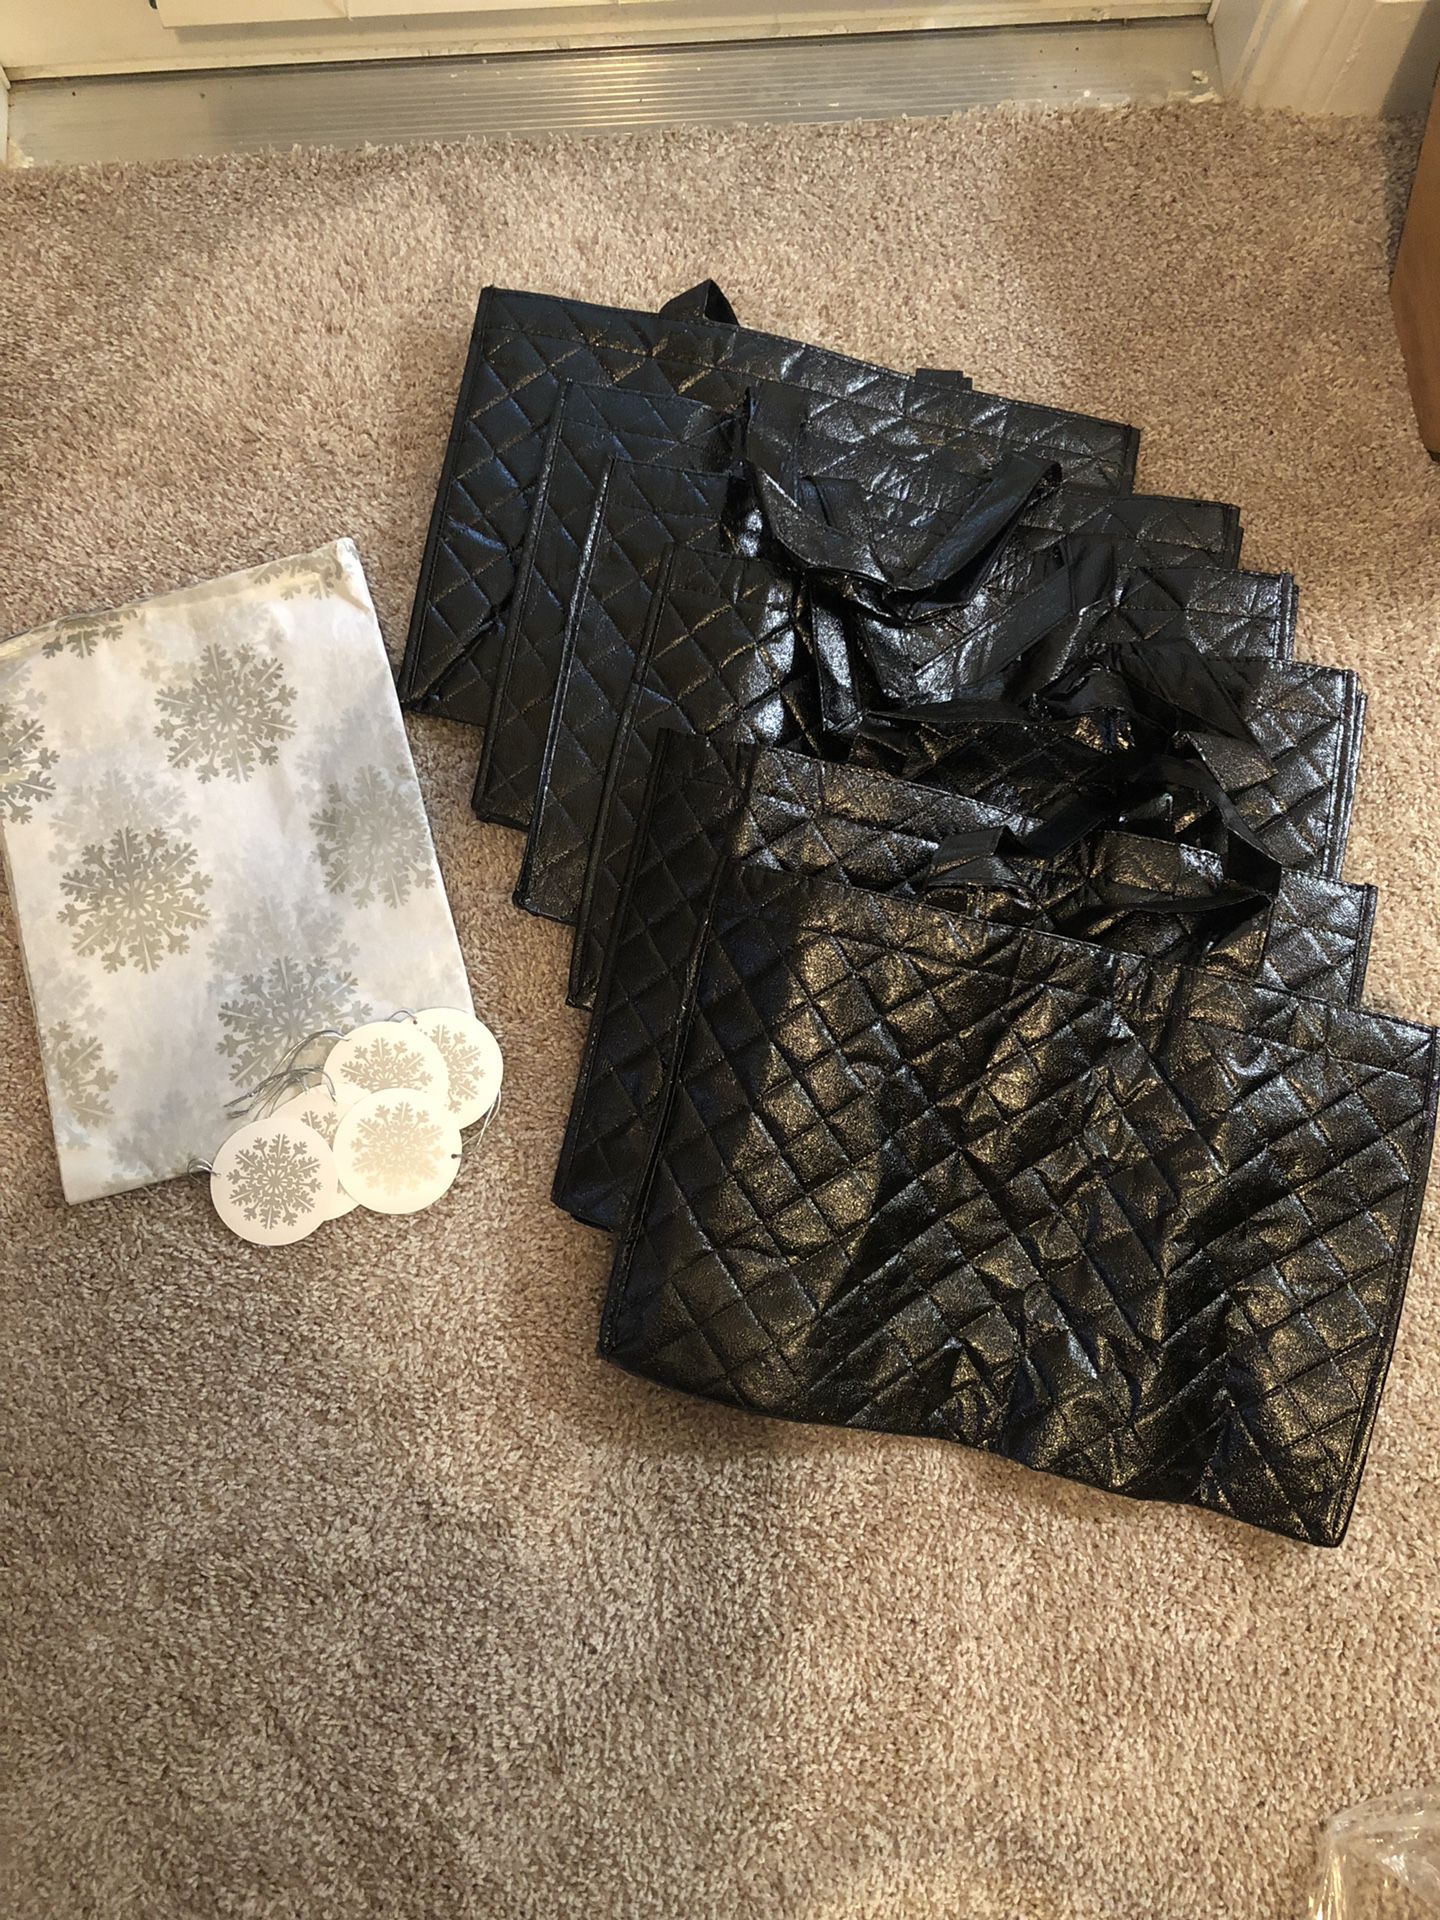 New Set of 6 Joy Mangano Gift Bags/Reusable Totes/Shopping Bags/Closet Organization